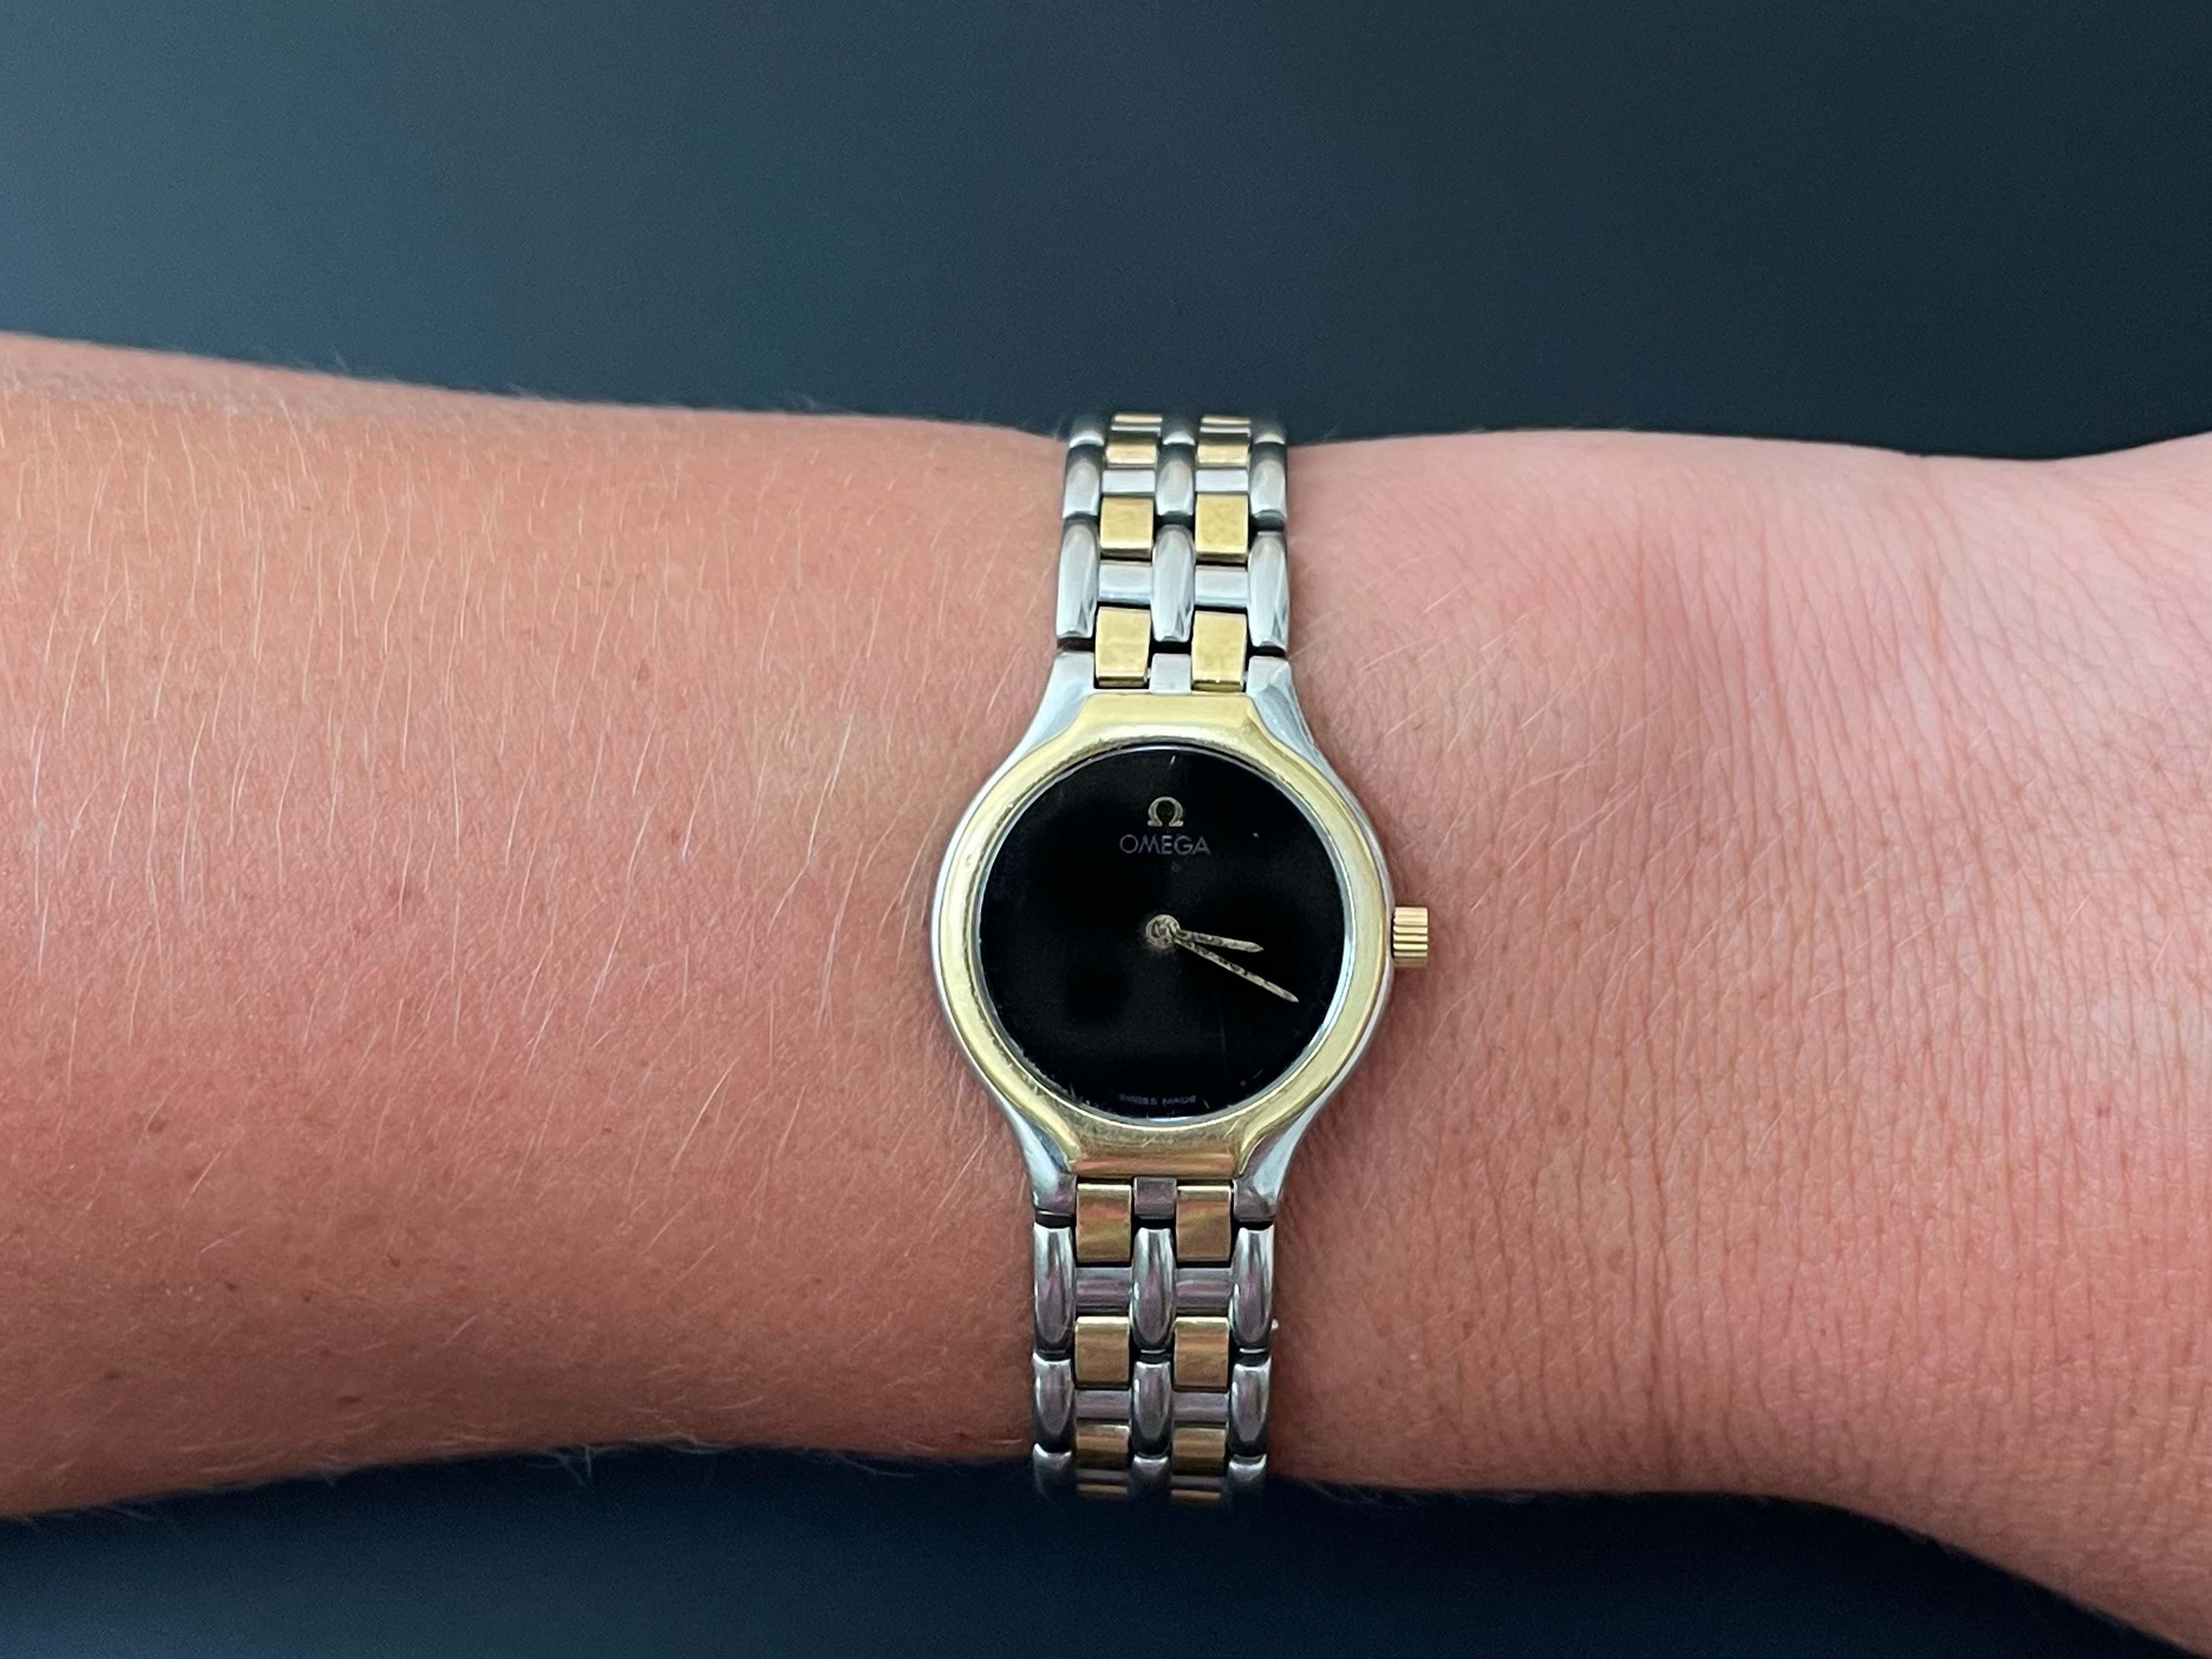 Montre Omega DeVille pour dames, en acier et 18 carats. Cette montre-bracelet classique est charismatique et captivante. Elle possède un boîtier rond de 23 mm et un cadran noir à quartz avec aiguilles des heures et des minutes. La montre est dotée